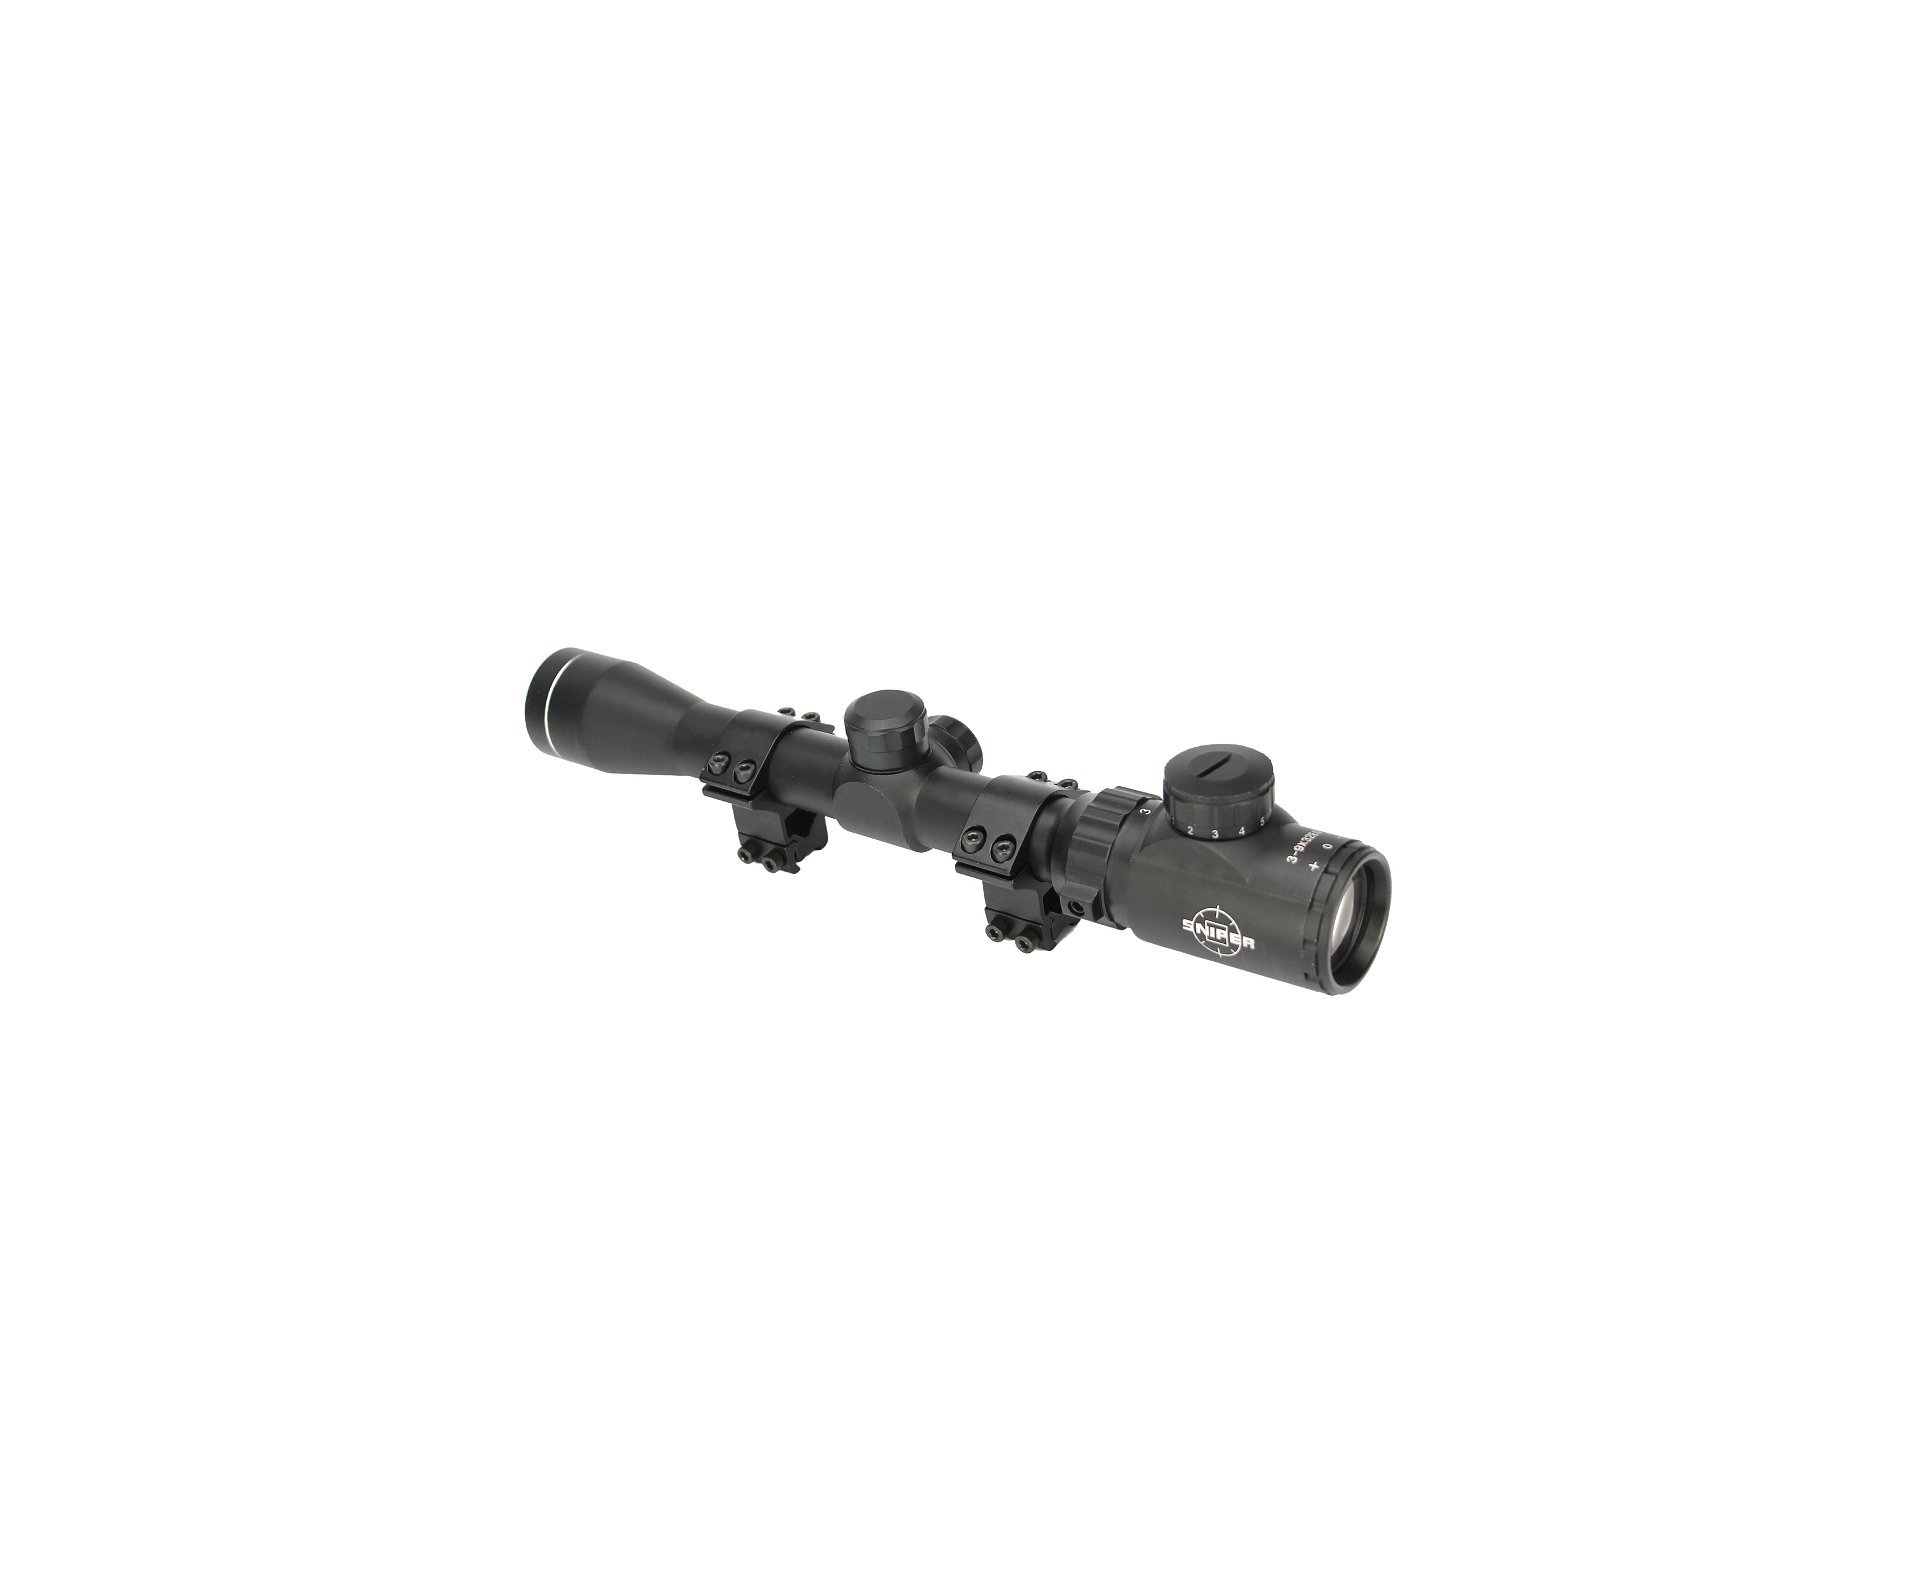 Luneta 3-9x32 Eg Sniper Com Reticulo Luminoso